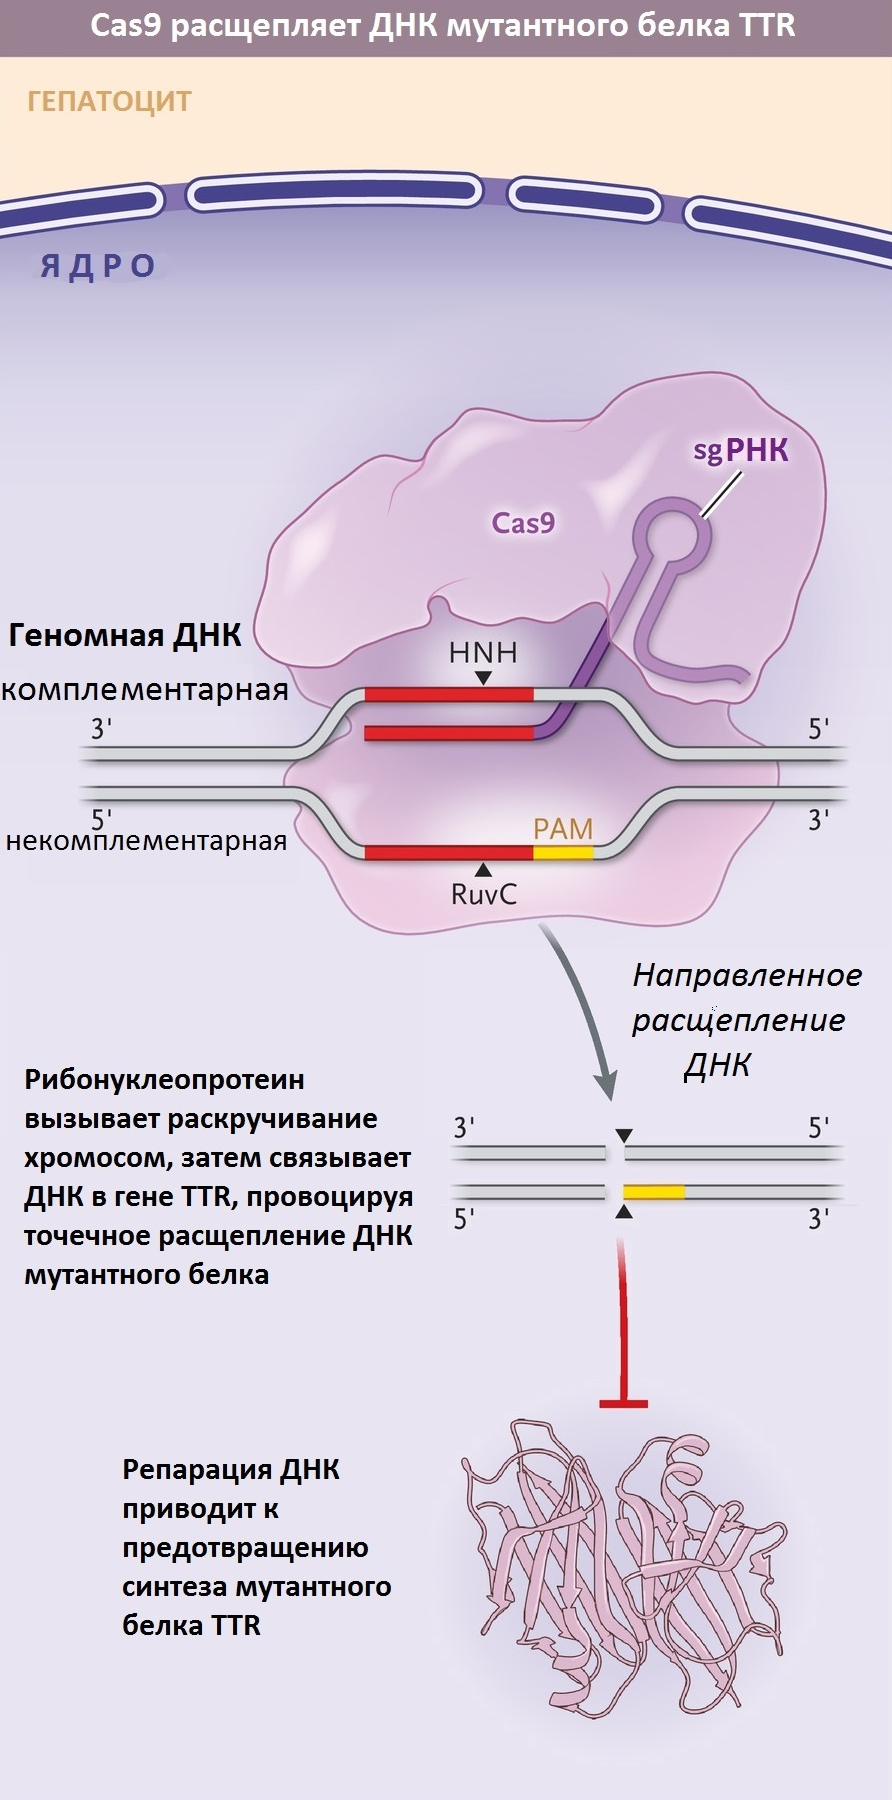 Импорт рибонуклеопротеинового комплекса Cas9 в ядро